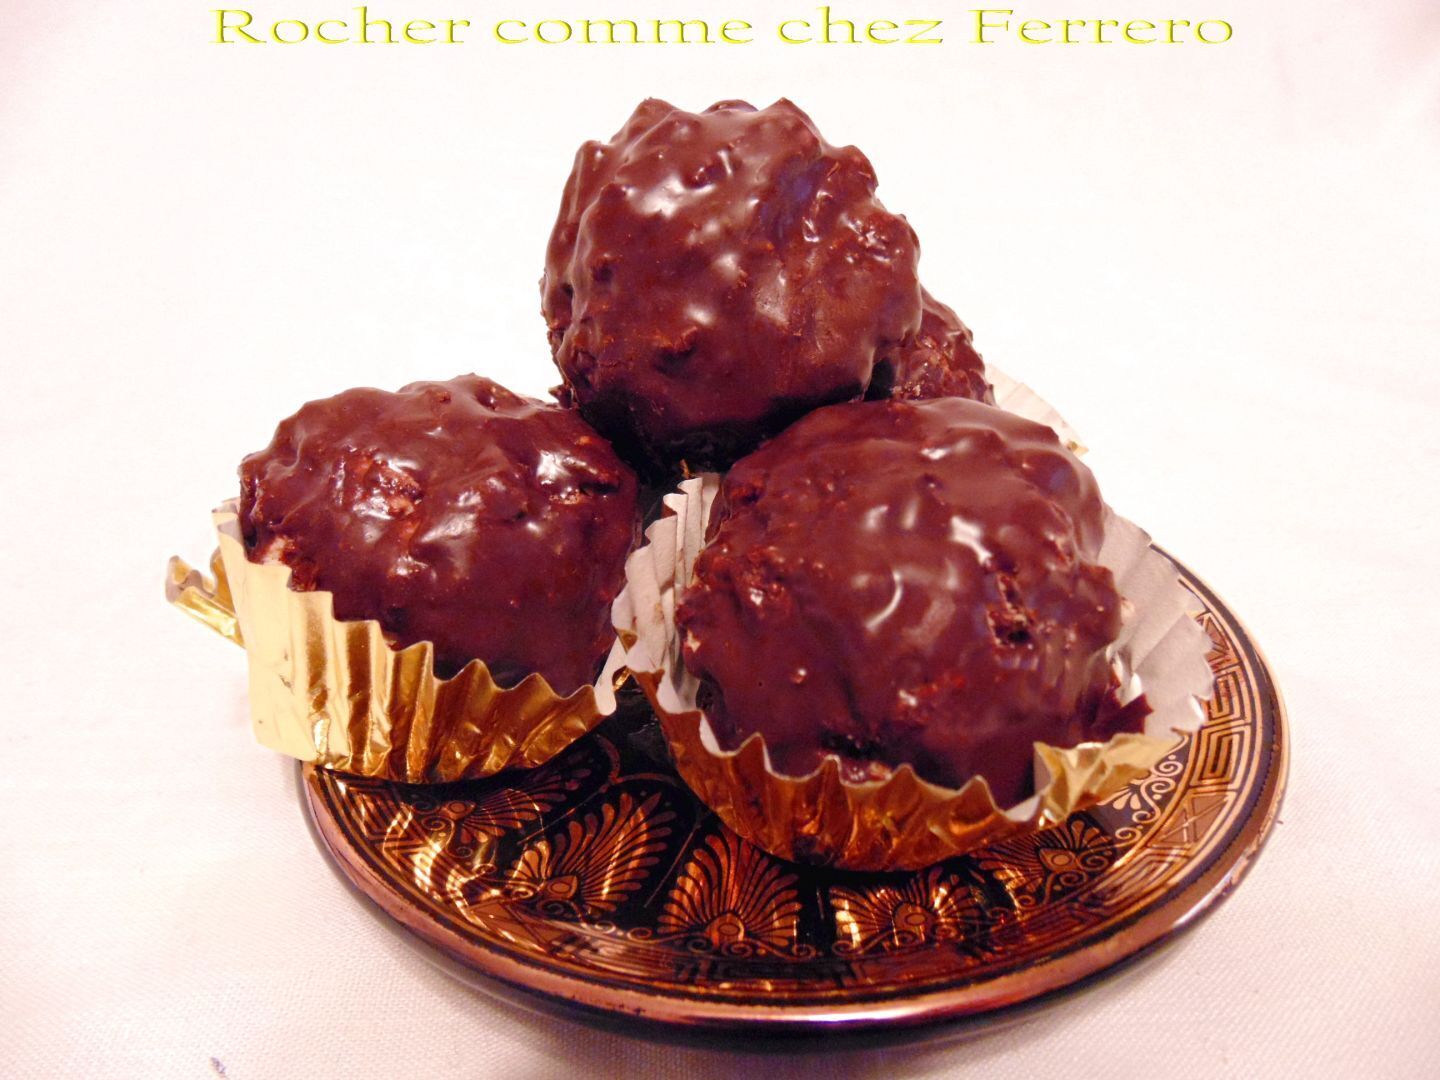 FERRERO ROCHER Grand rocher gaufrettes chocolat lait et noisettes